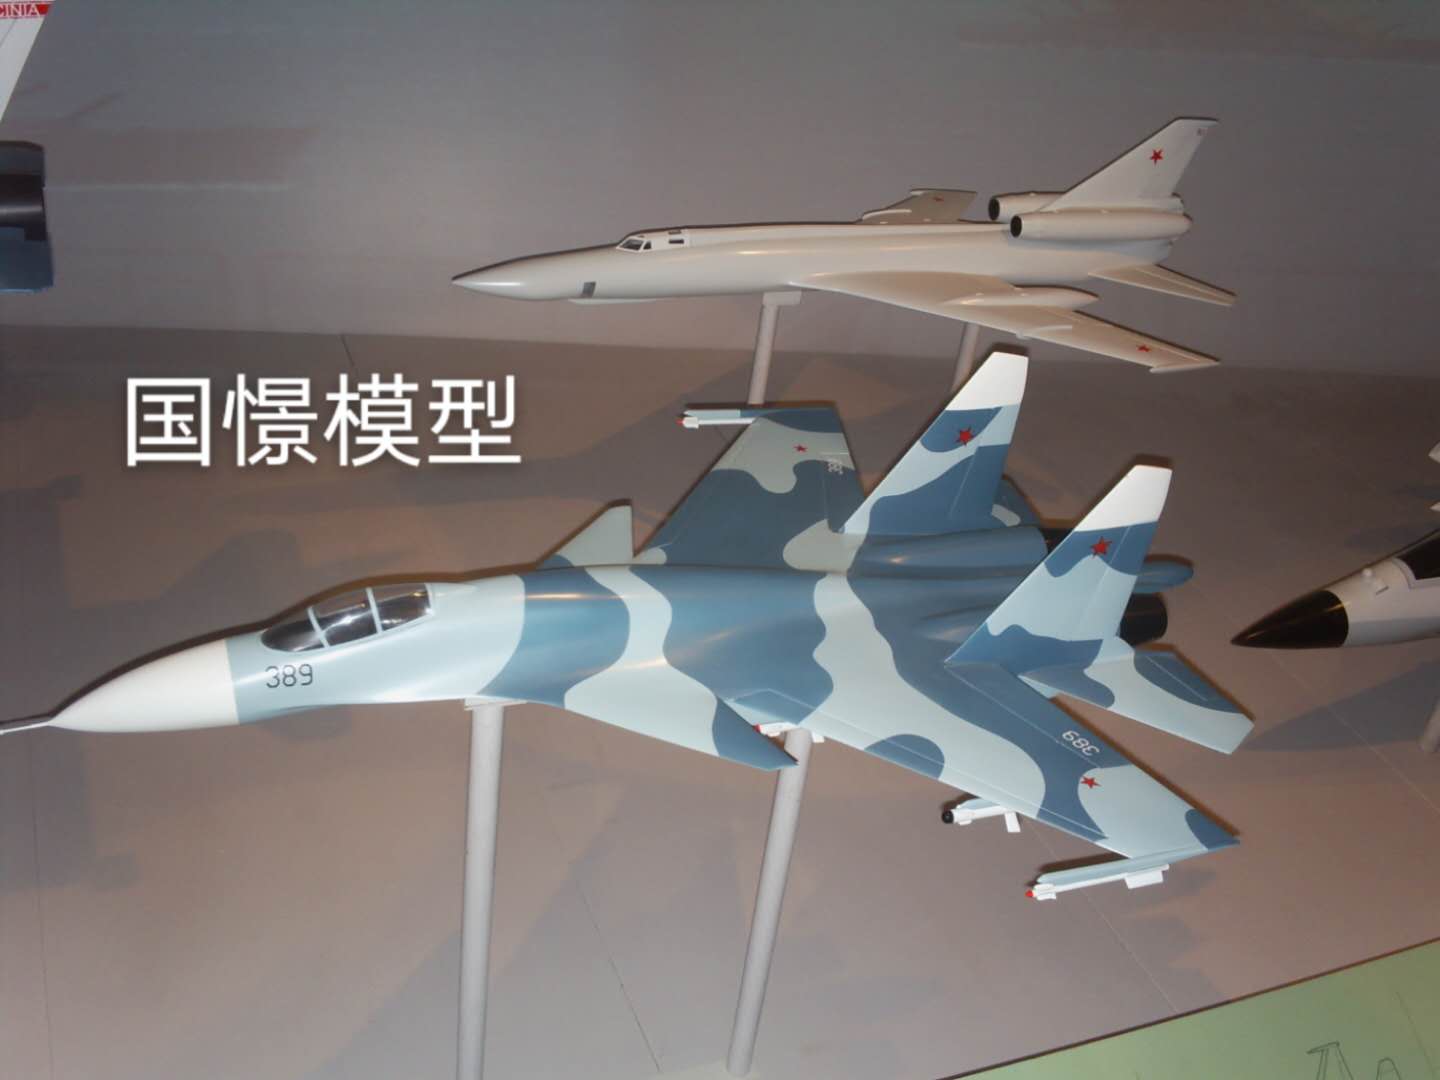 仙游县军事模型